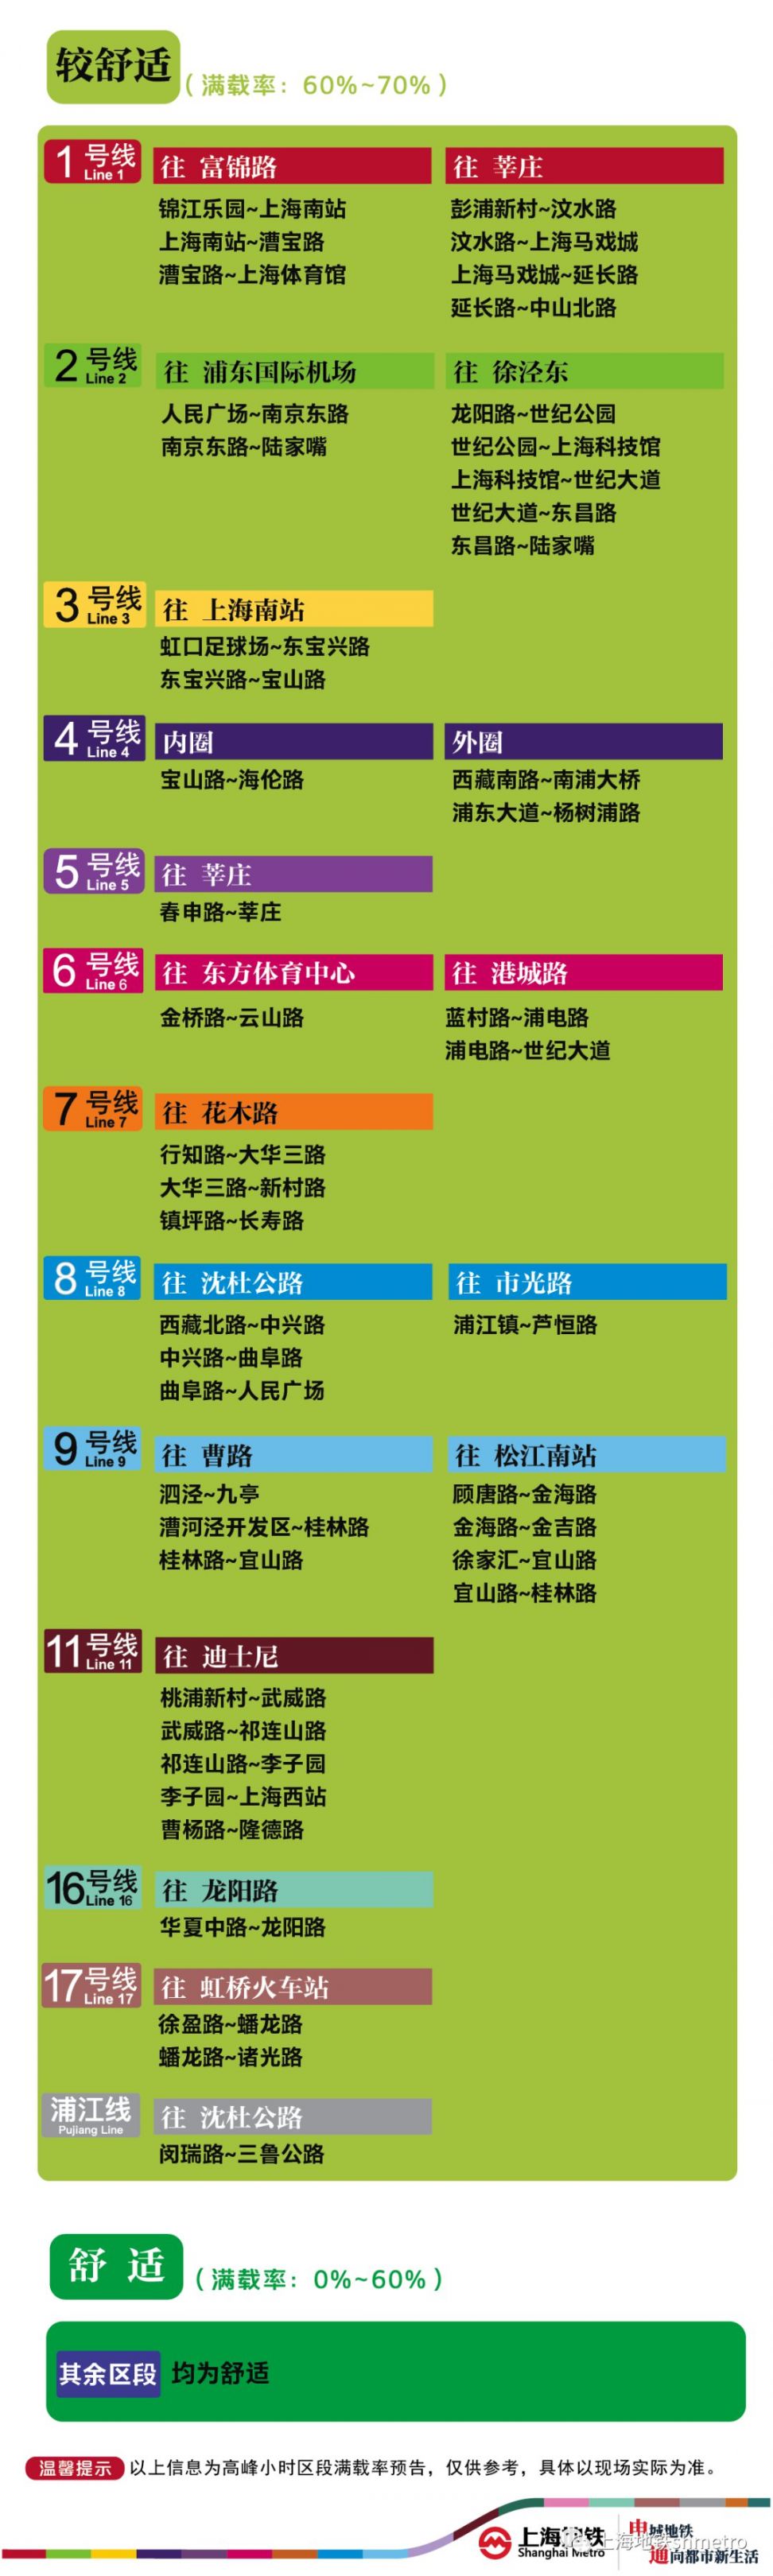 5月12日上海14座地铁站早高峰限流 附适度度预告